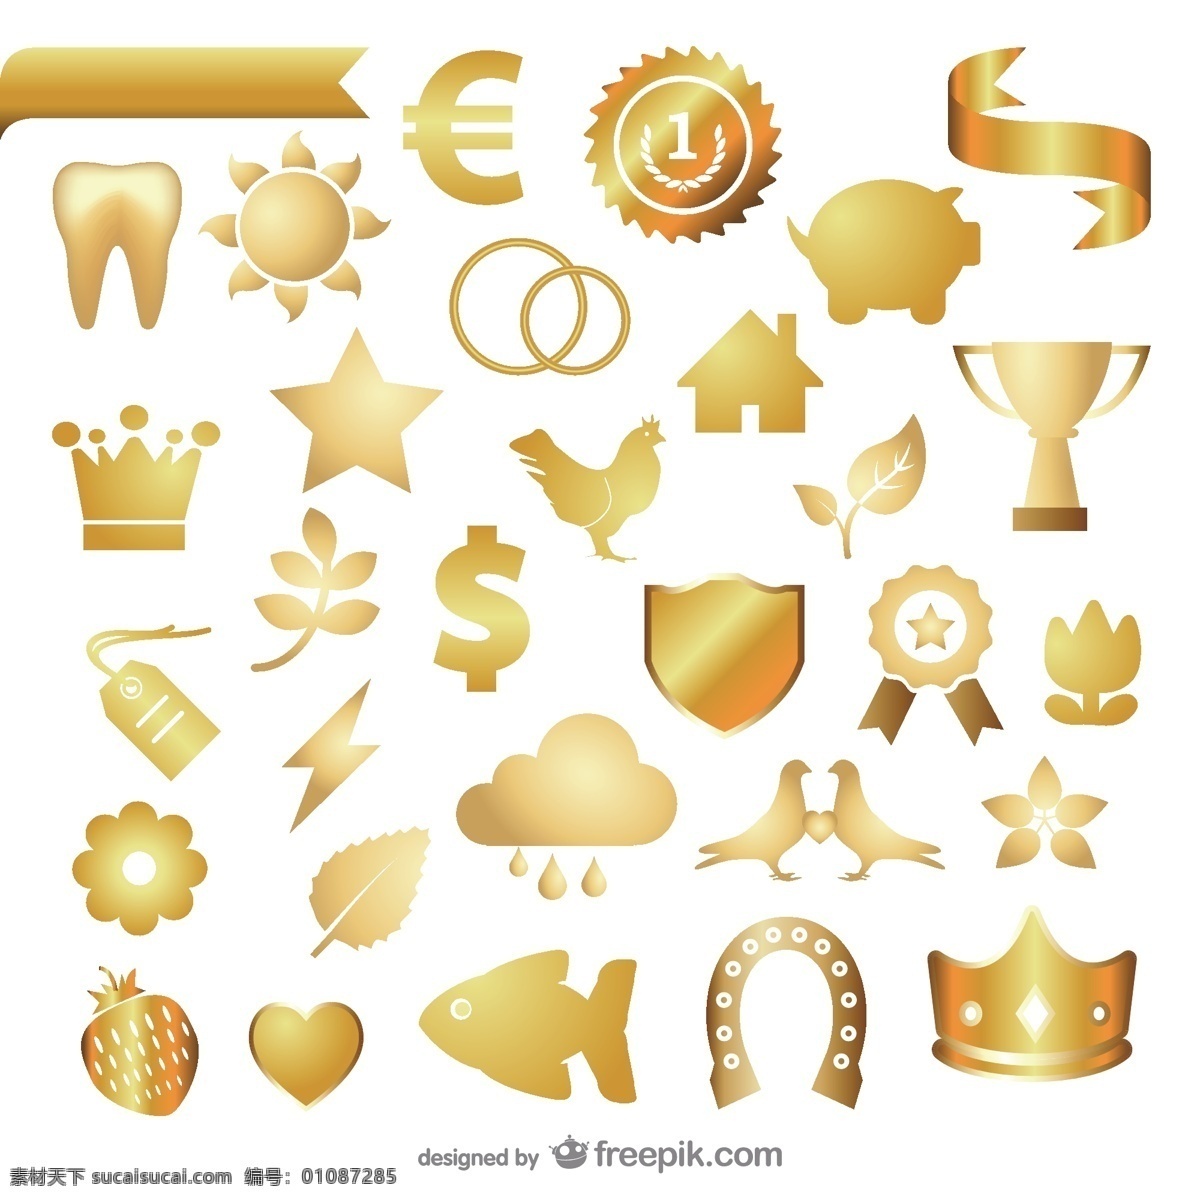 金色 元素 矢量 文件 金色王冠 金色盾牌 金色元素 金色牙齿 闪电 徽章 鸽子 白色